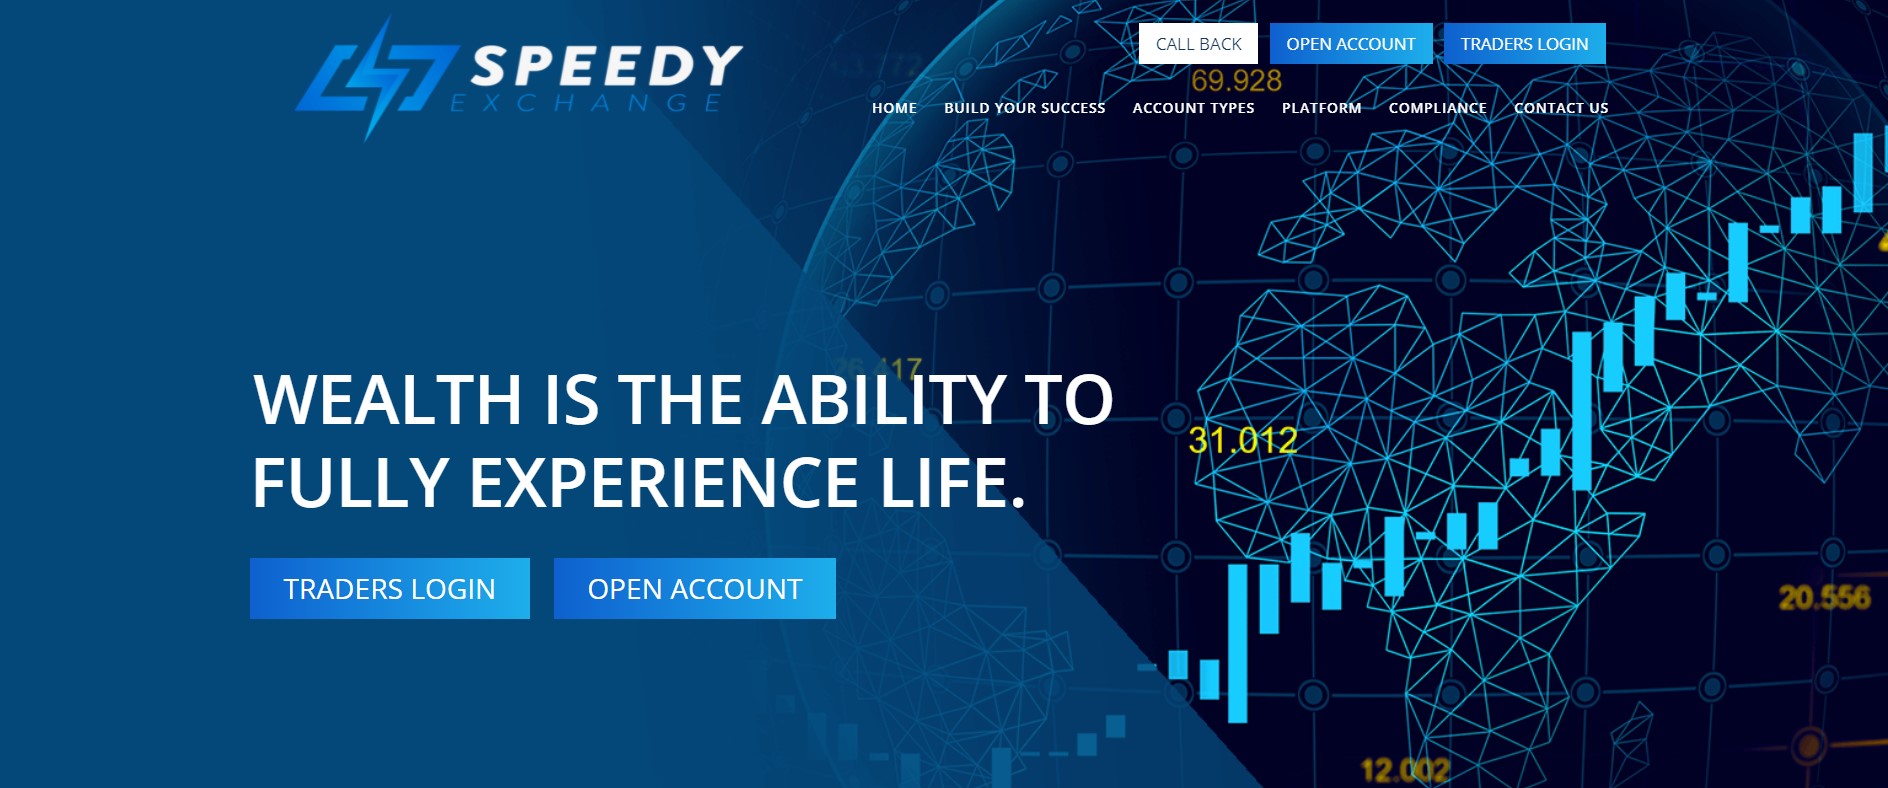 Speedyexchange website